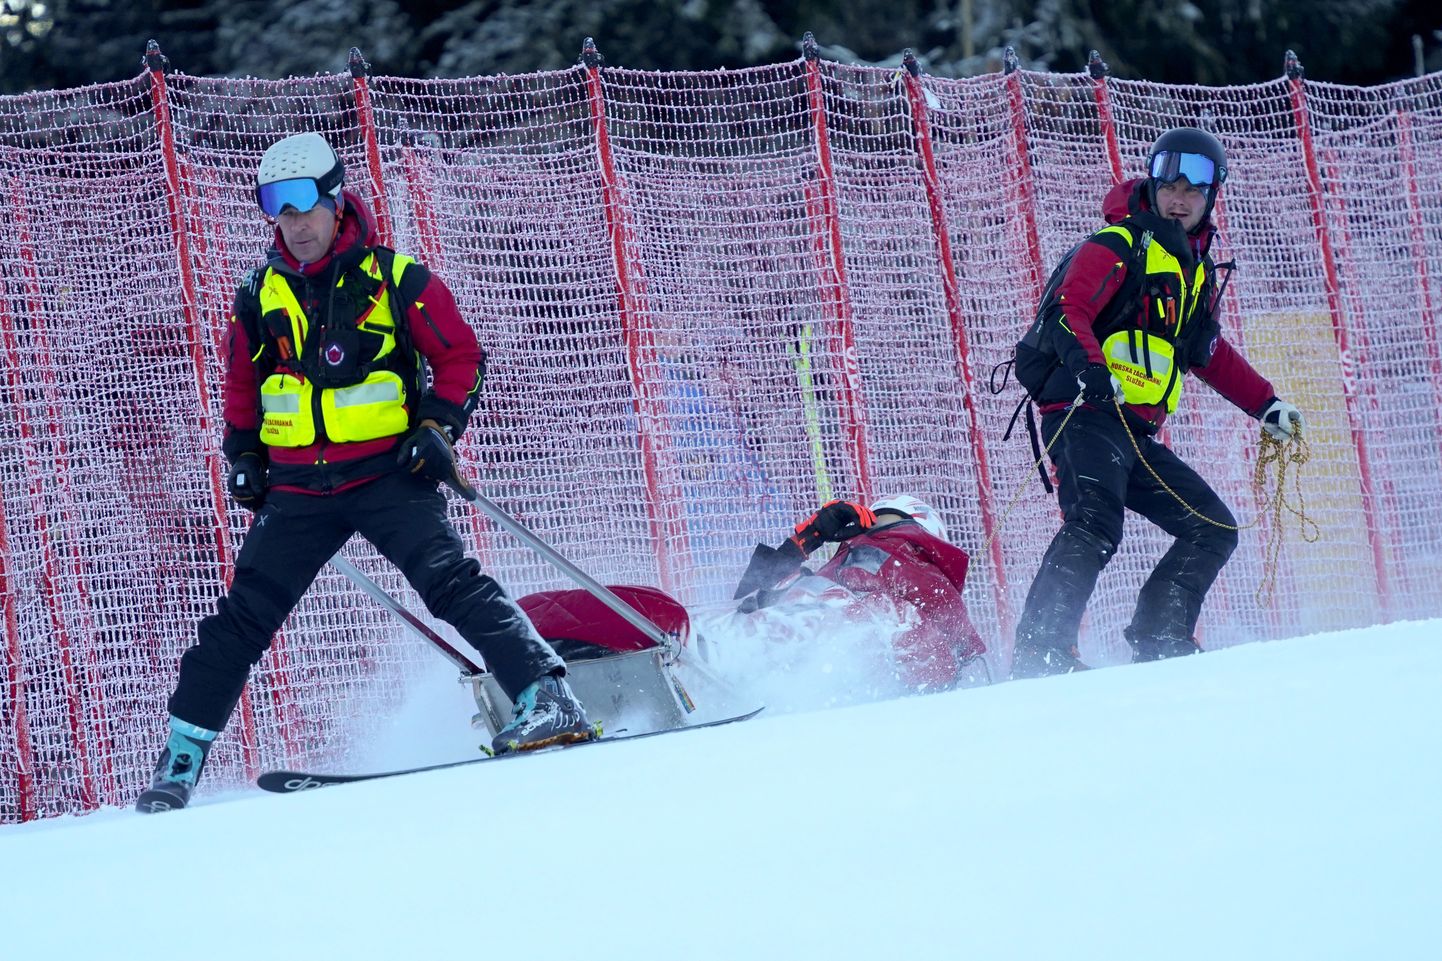 Словацкая горнолыжница Петра Влхова при спуске упала и получила серьезные травмы.